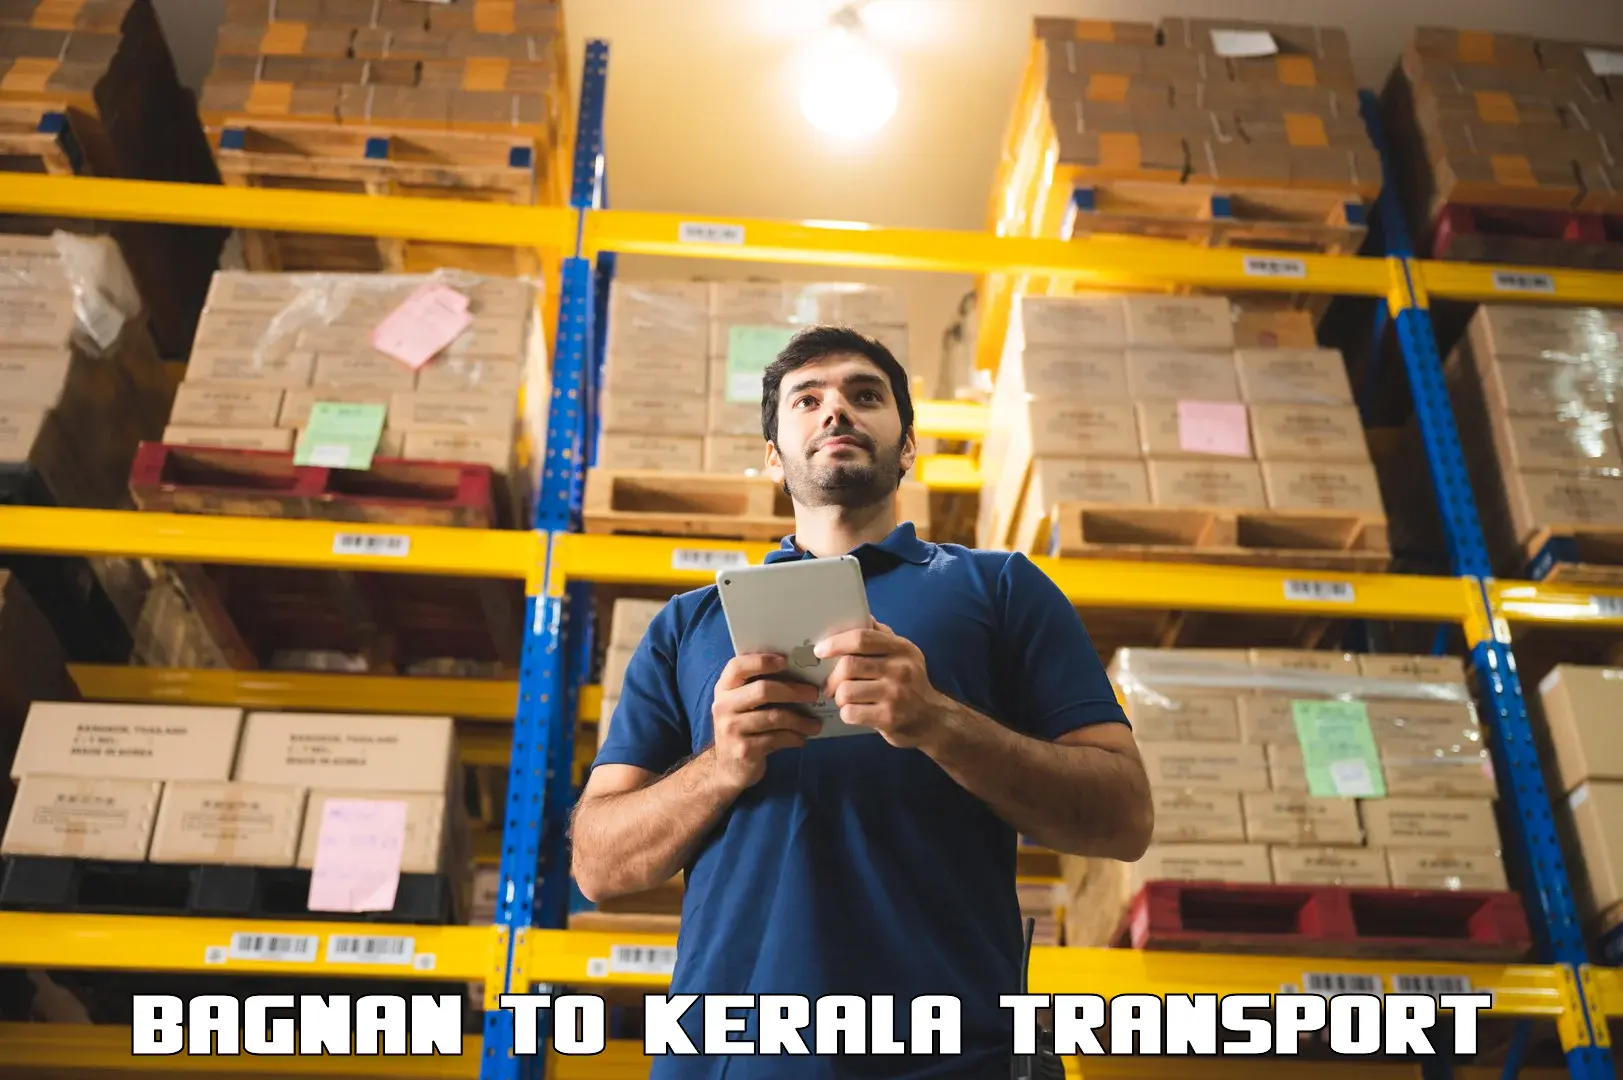 Furniture transport service Bagnan to Kerala